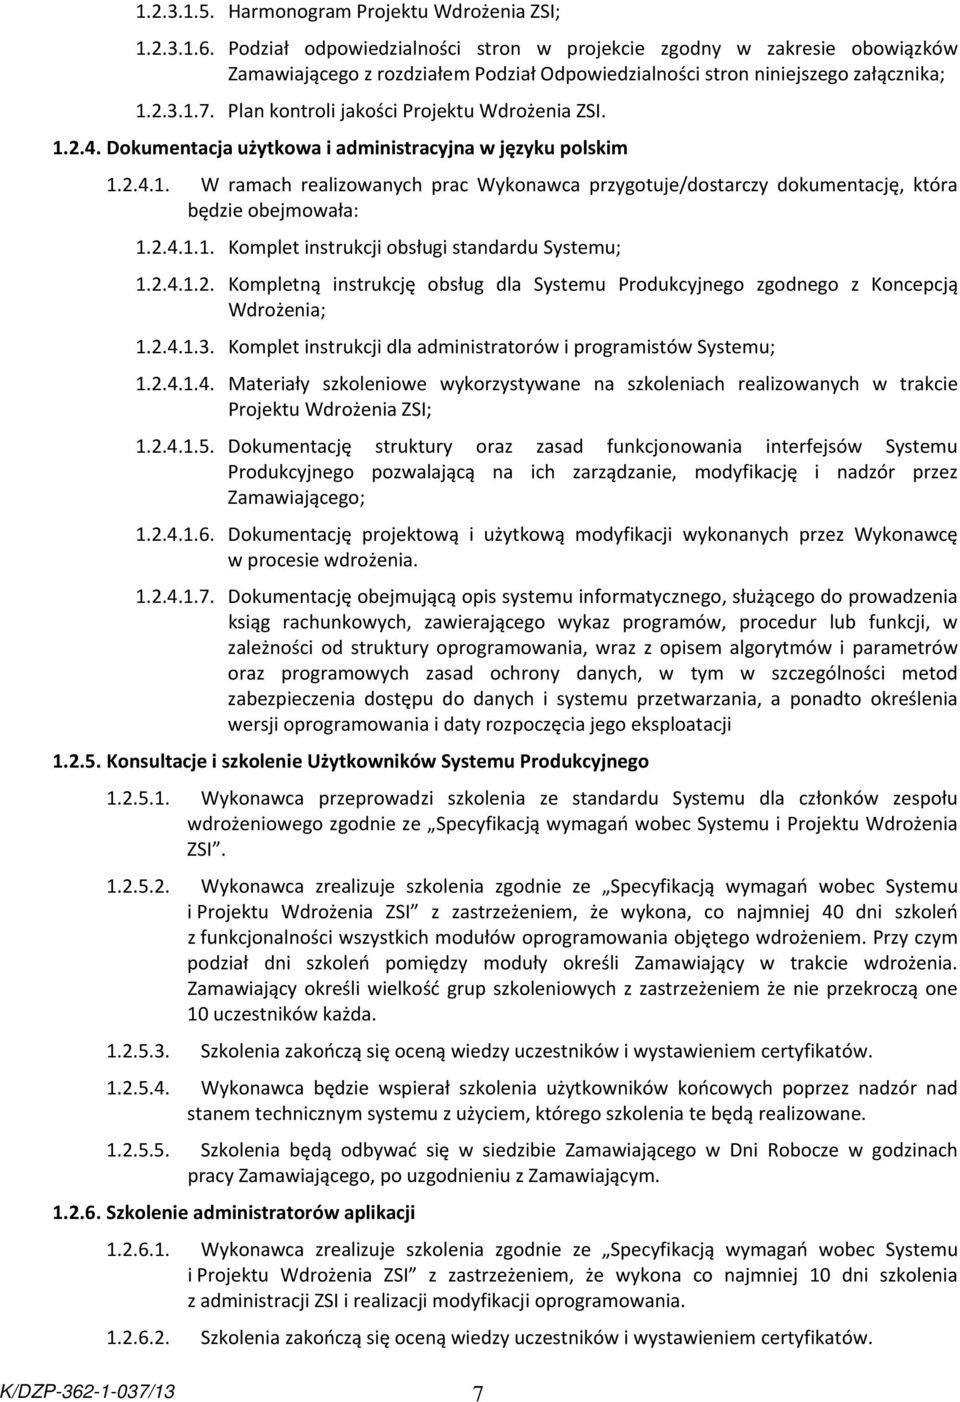 Plan kontroli jakości Projektu Wdrożenia ZSI. 1.2.4. Dokumentacja użytkowa i administracyjna w języku polskim 1.2.4.1. W ramach realizowanych prac Wykonawca przygotuje/dostarczy dokumentację, która będzie obejmowała: 1.